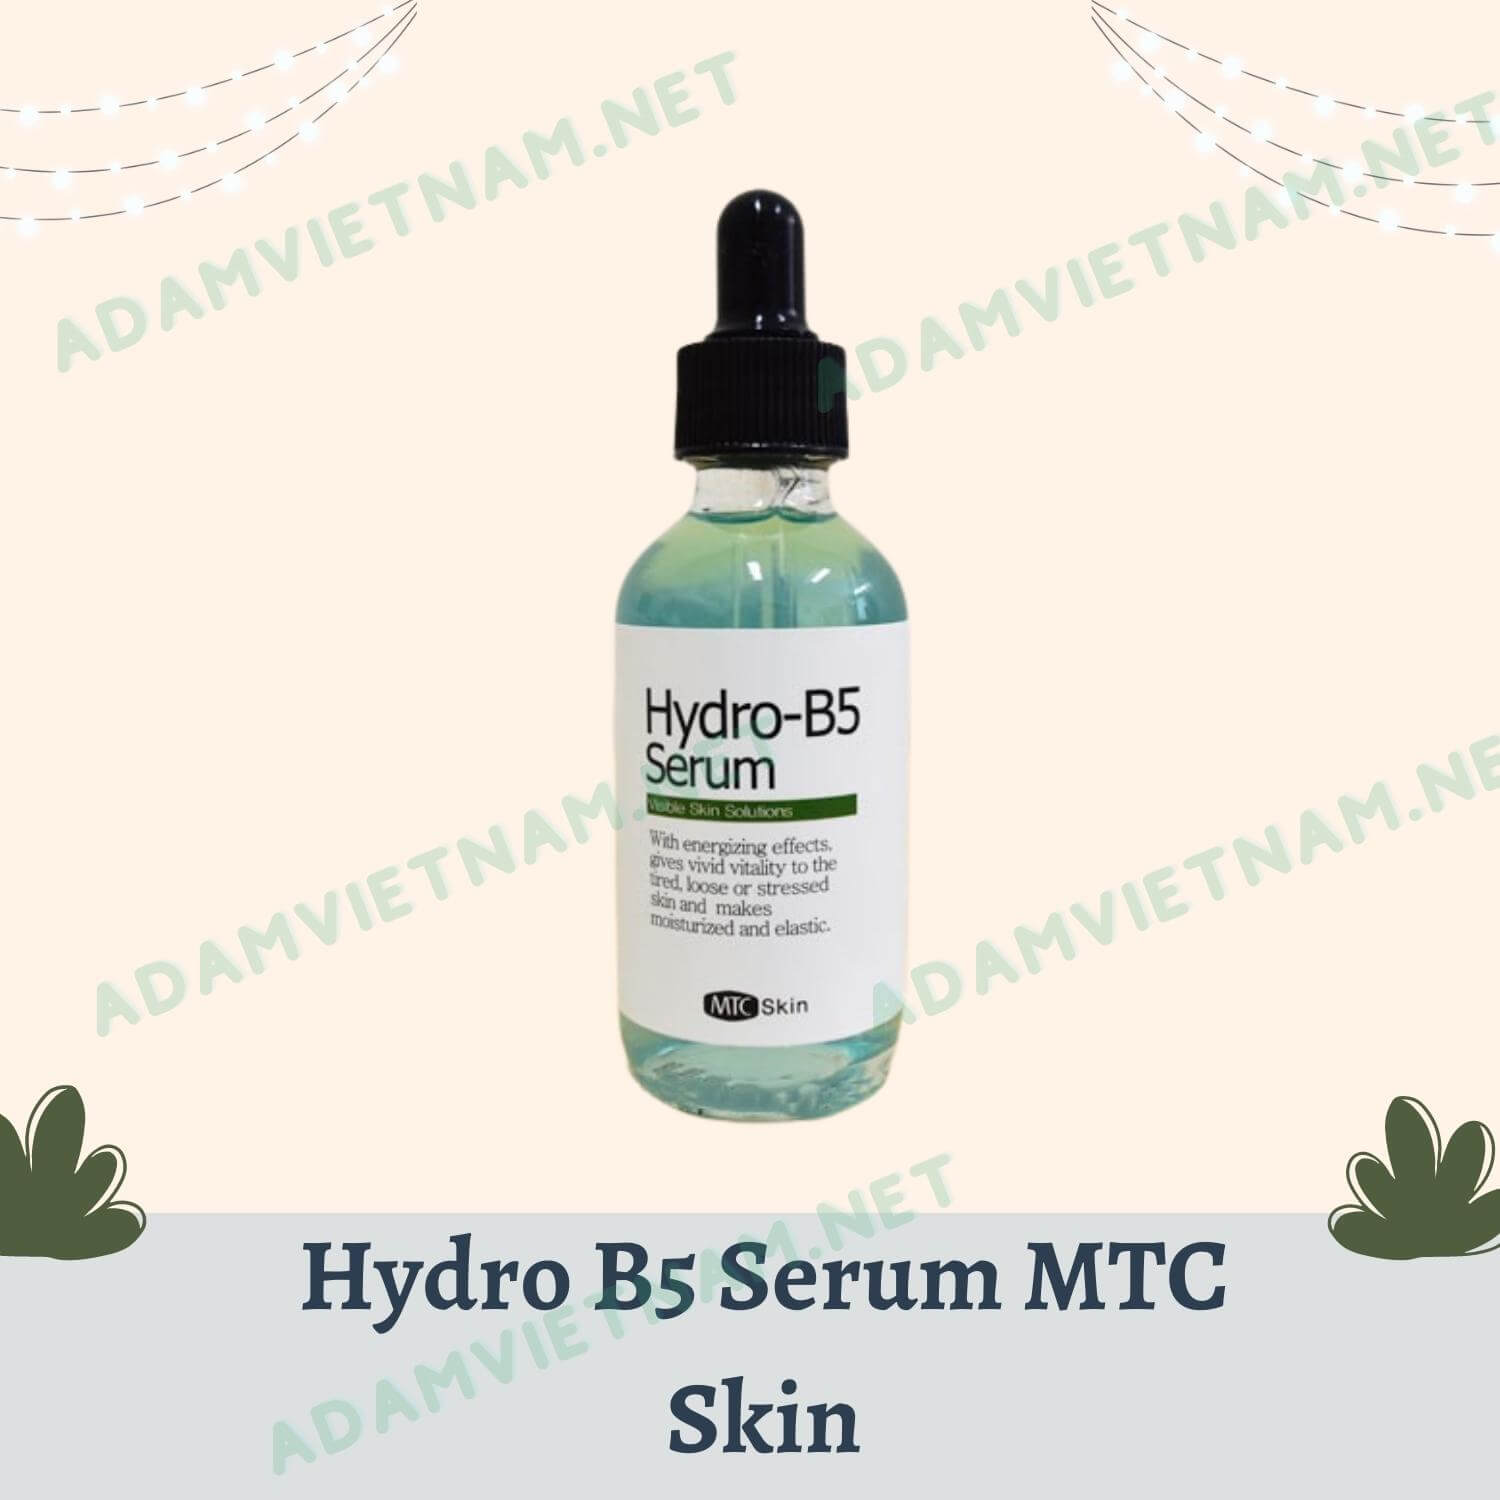 Hydro B5 Serum MTC Skin